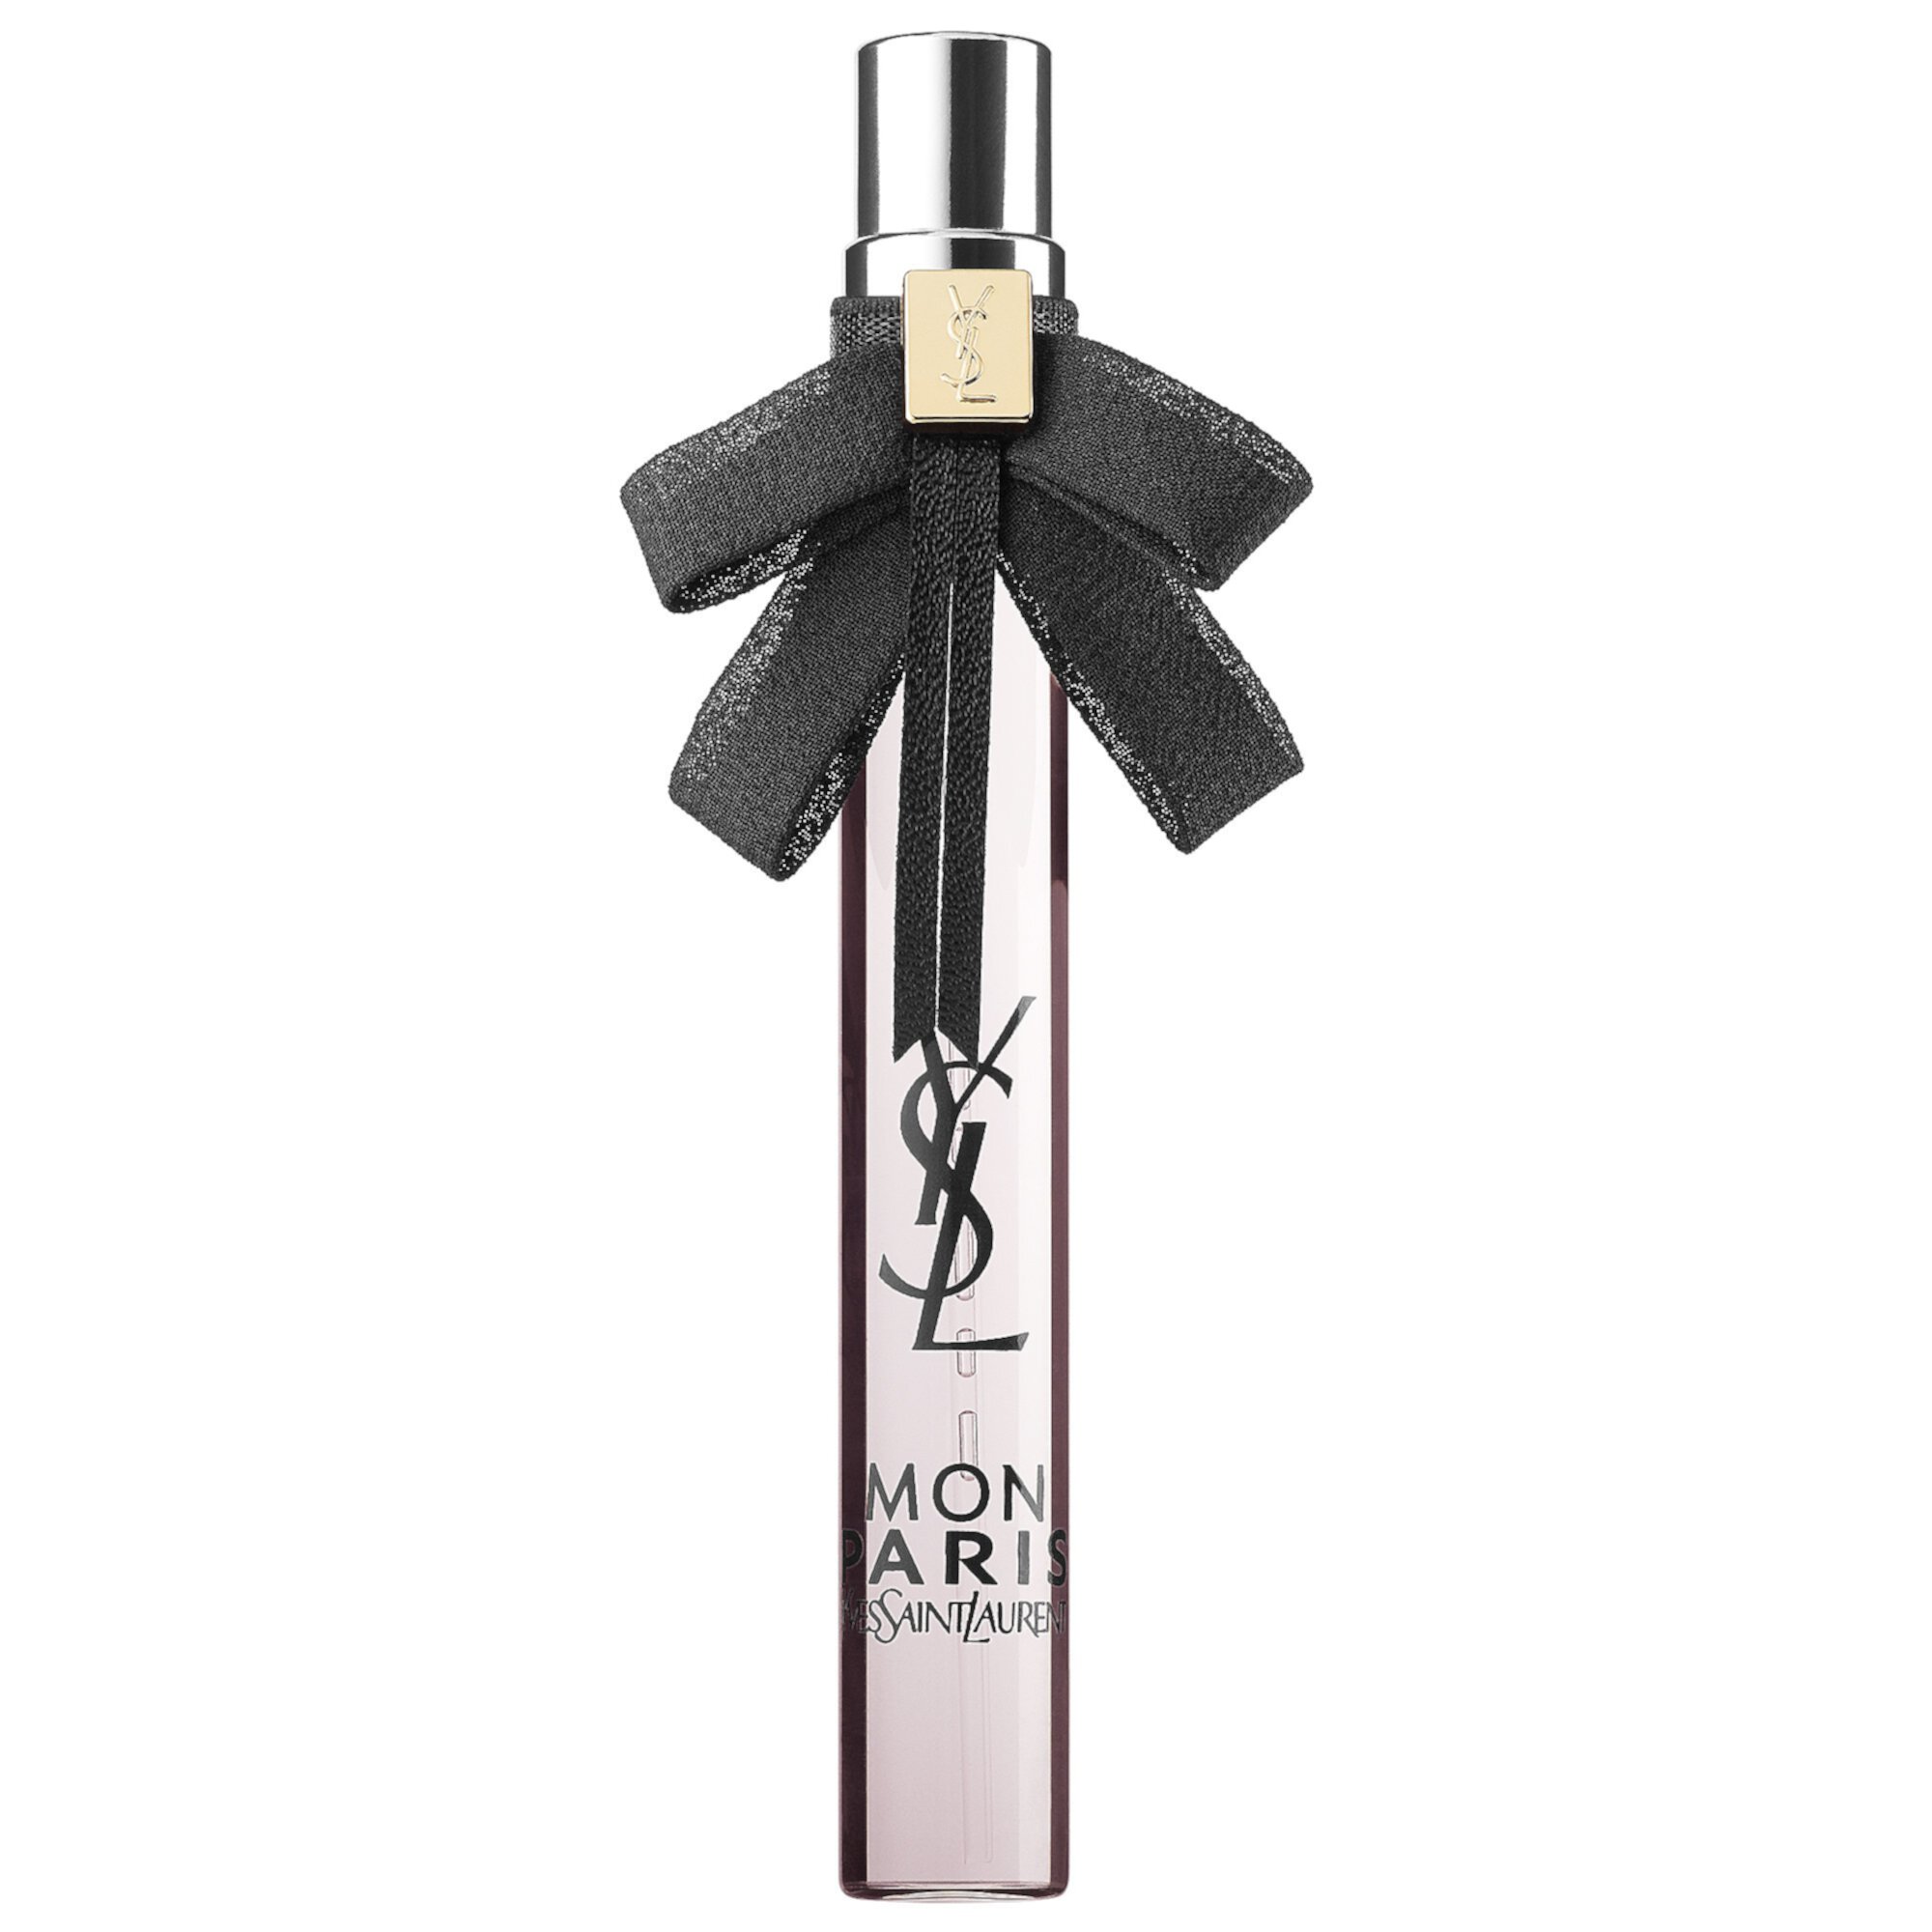 Mon Paris Eau de Parfum Travel Spray Yves Saint Laurent